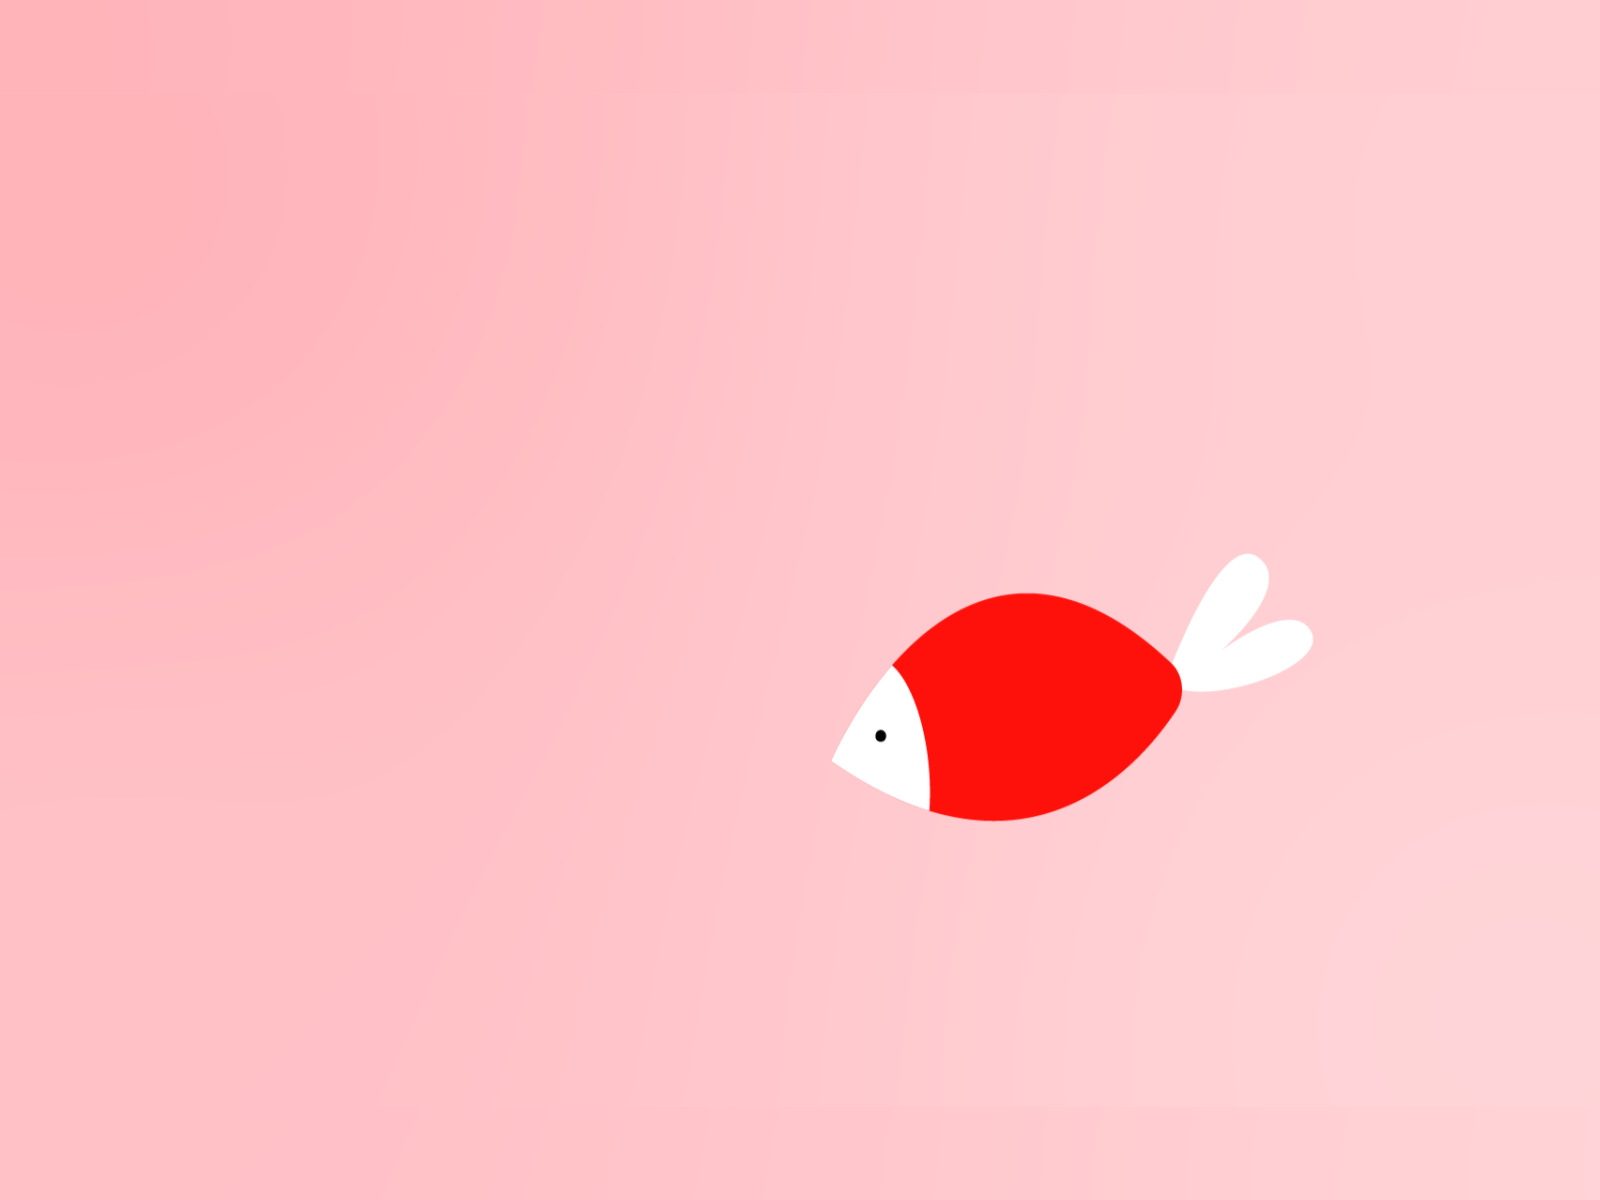 Animated fish